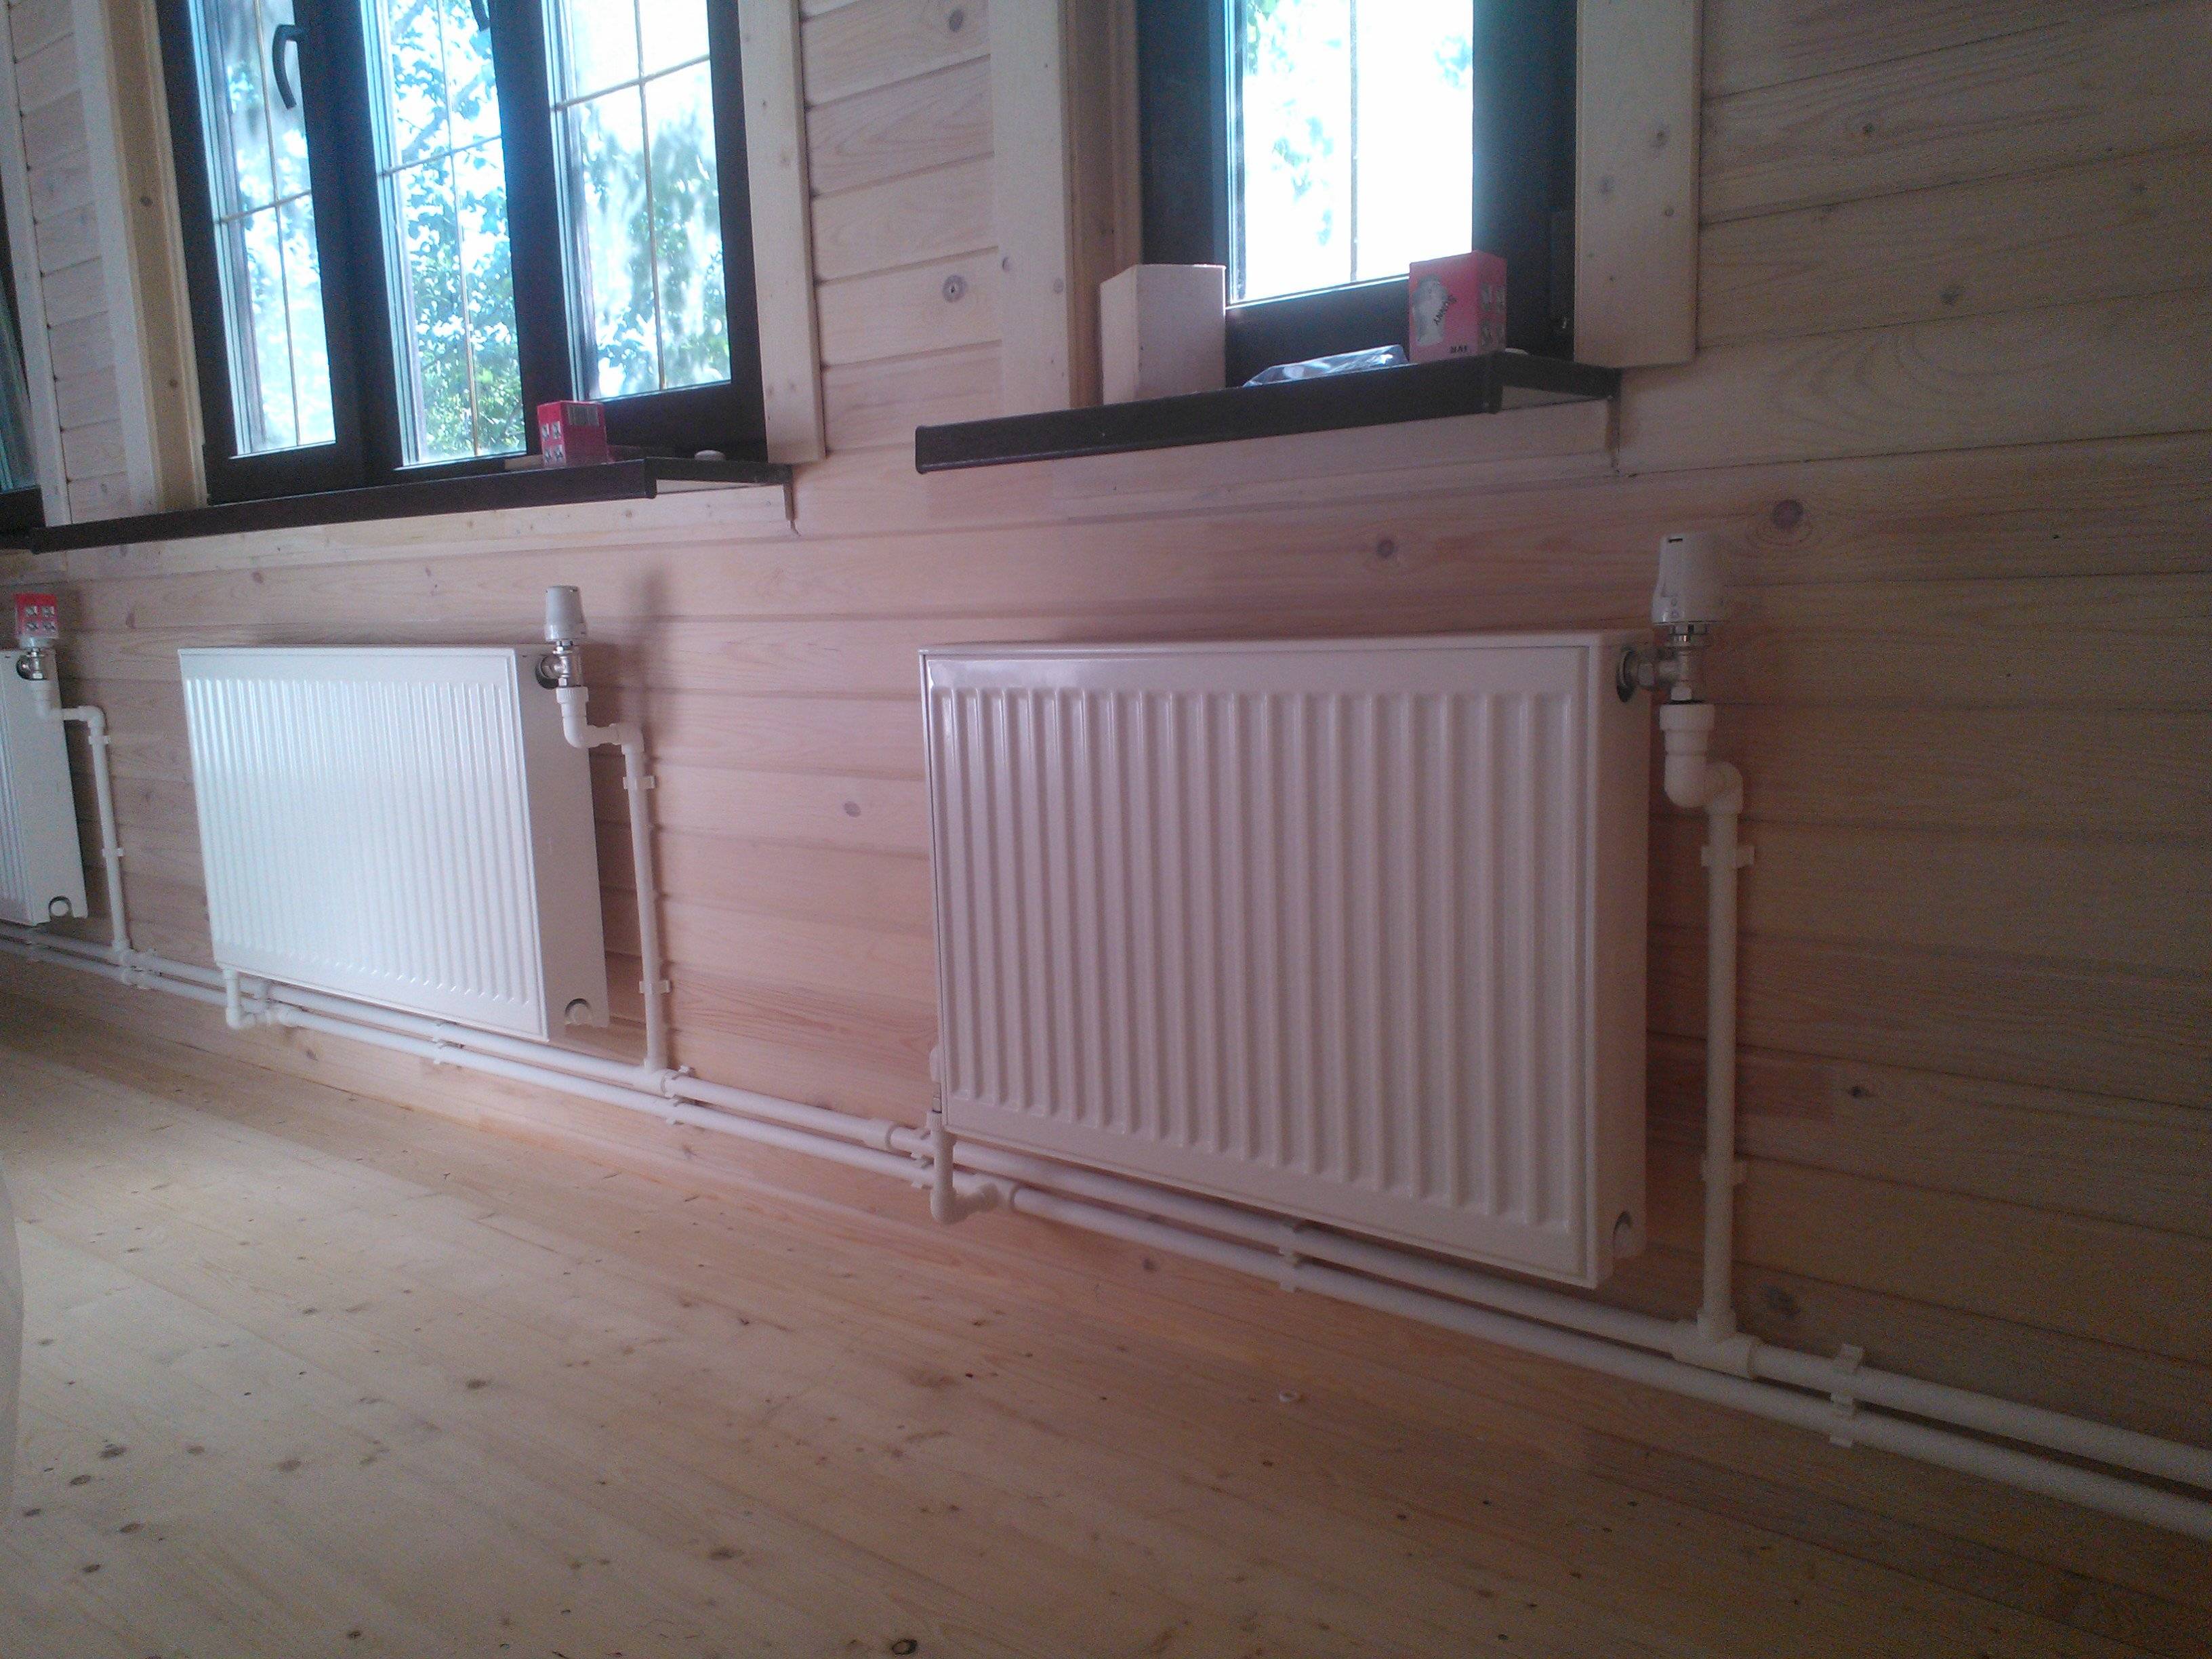 Отопление в деревянном доме: обогрев с минимальными затратами, как лучше всего обогреть жилище